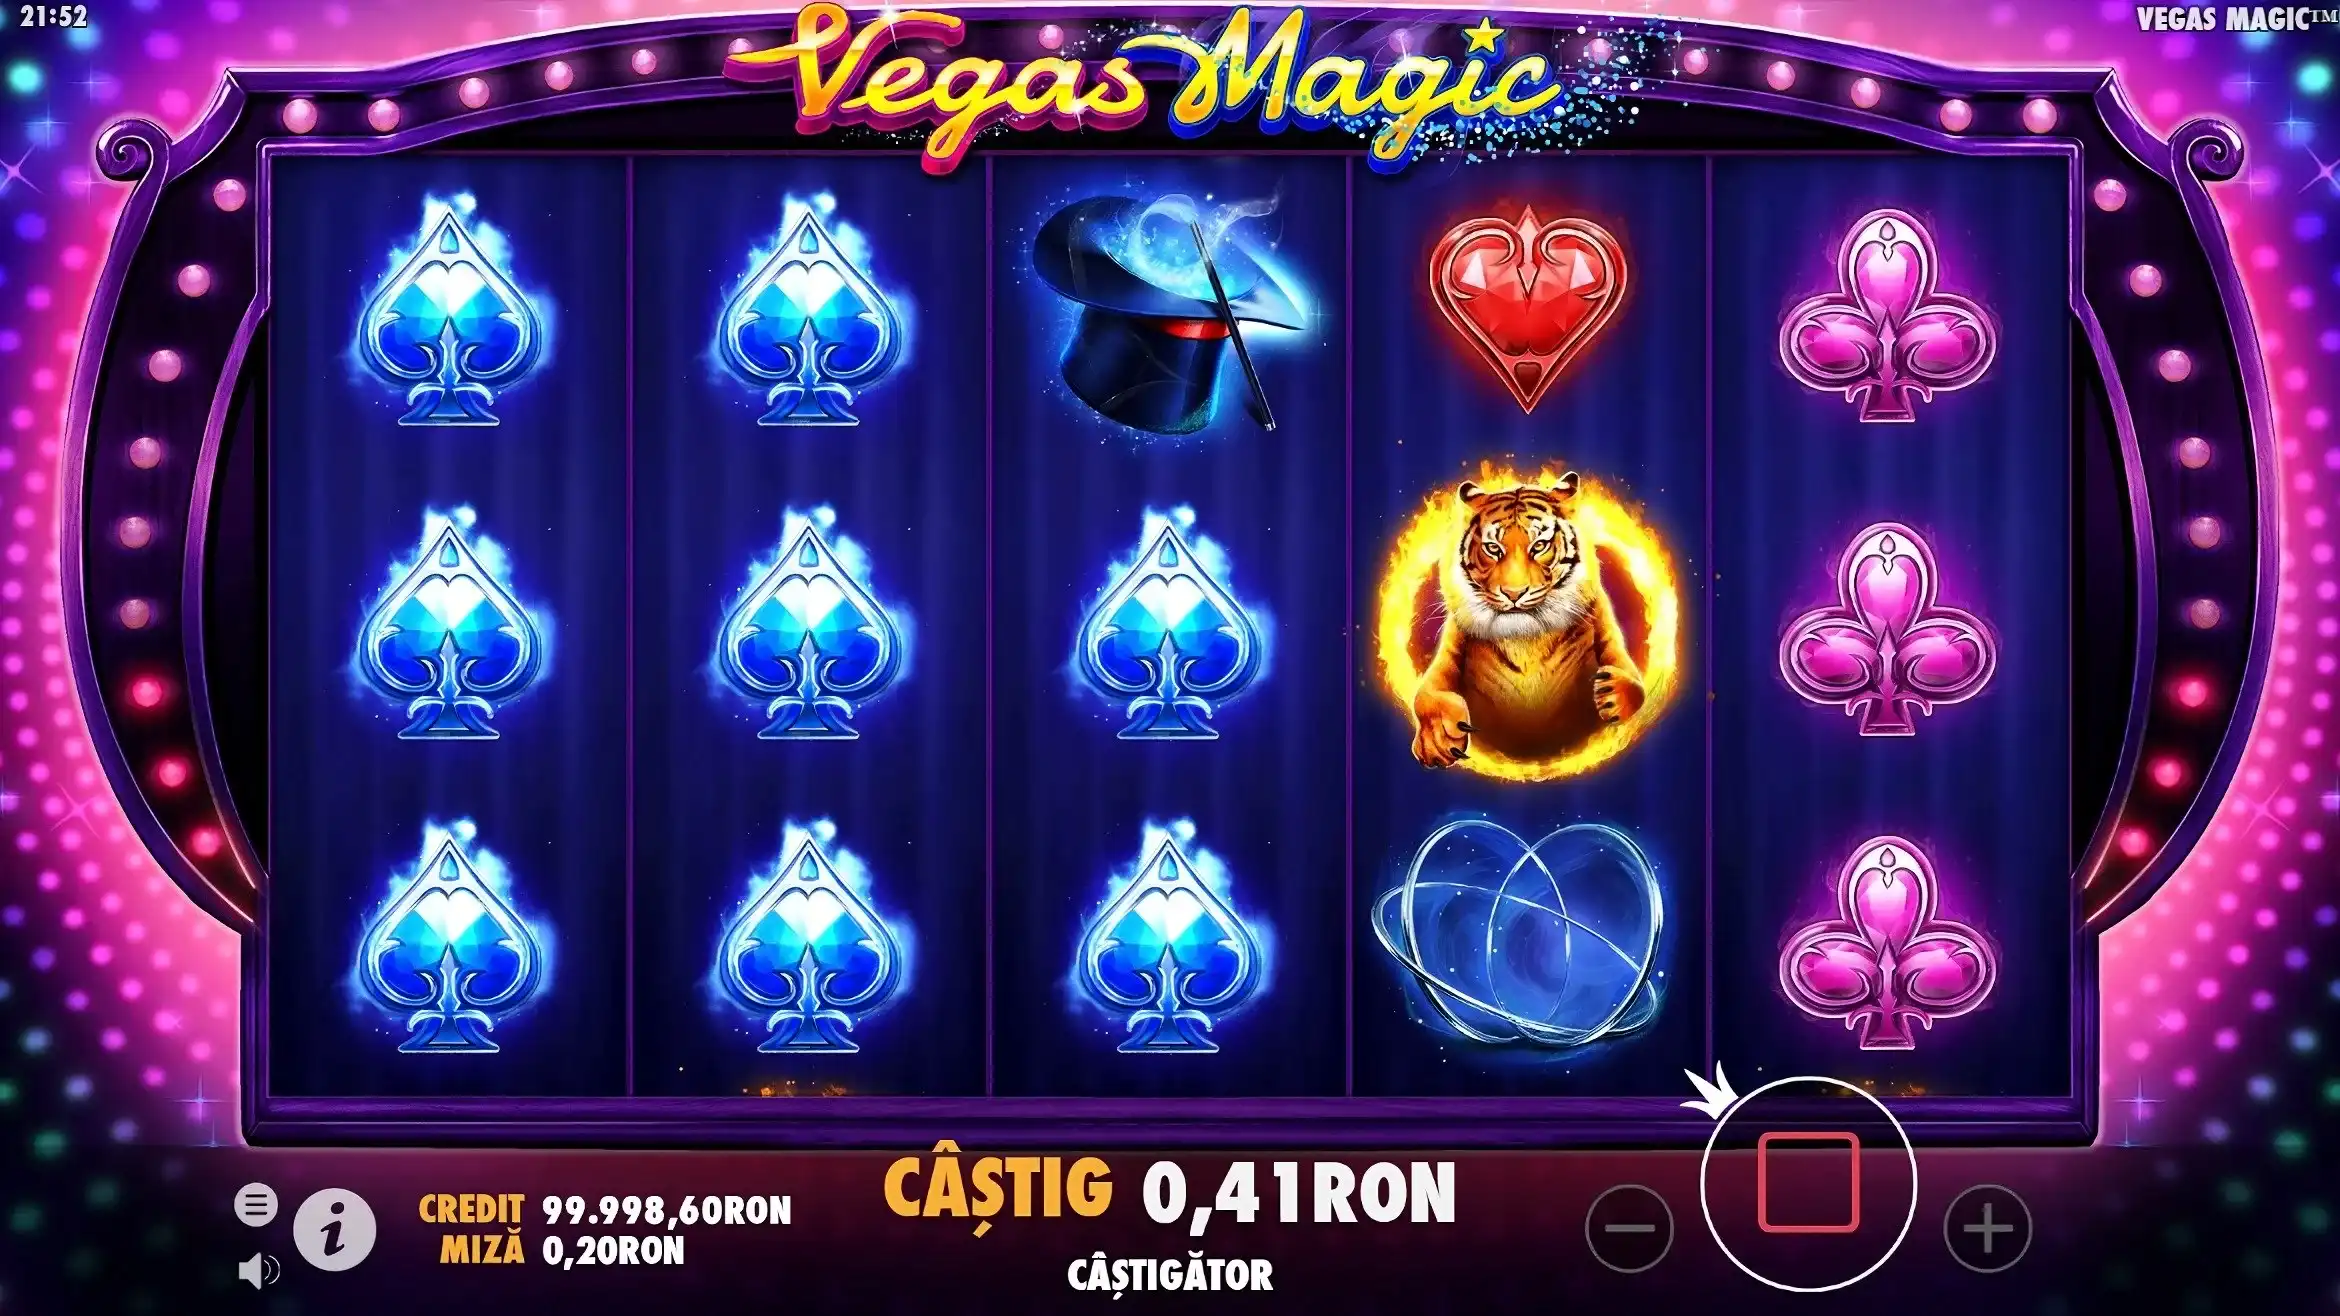 Castig Vegas Magic